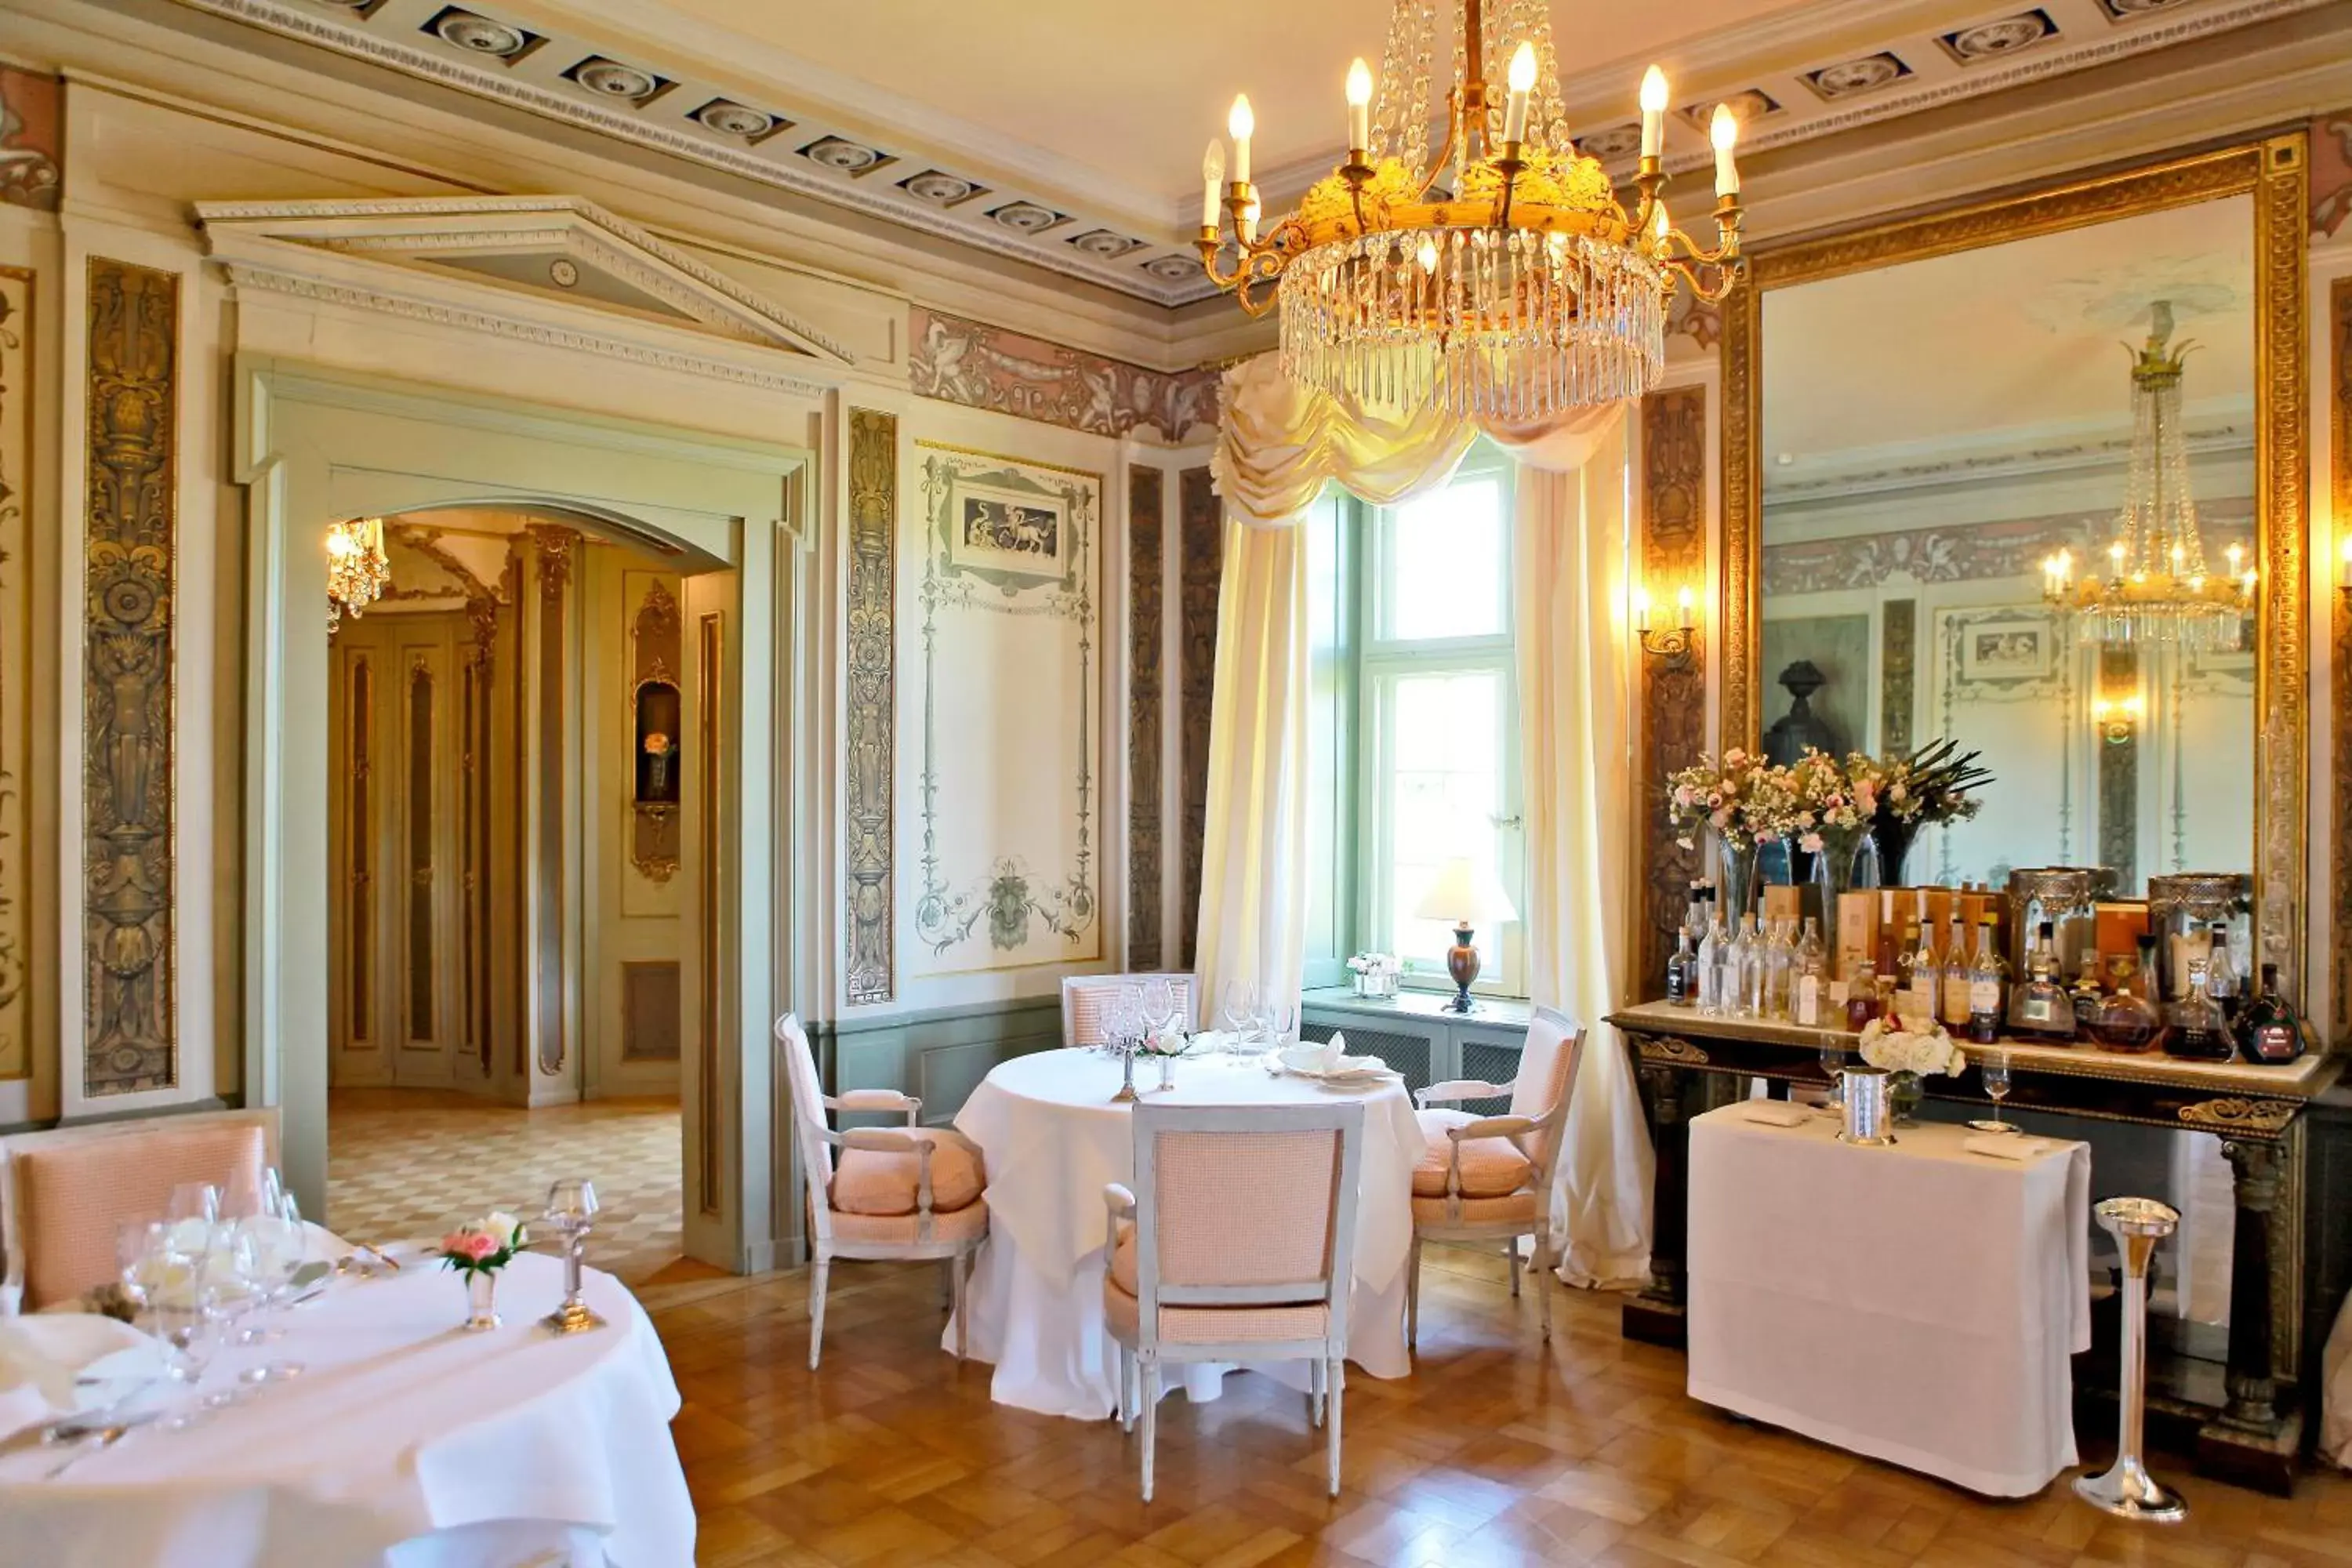 Dining area in Schlosshotel Münchhausen